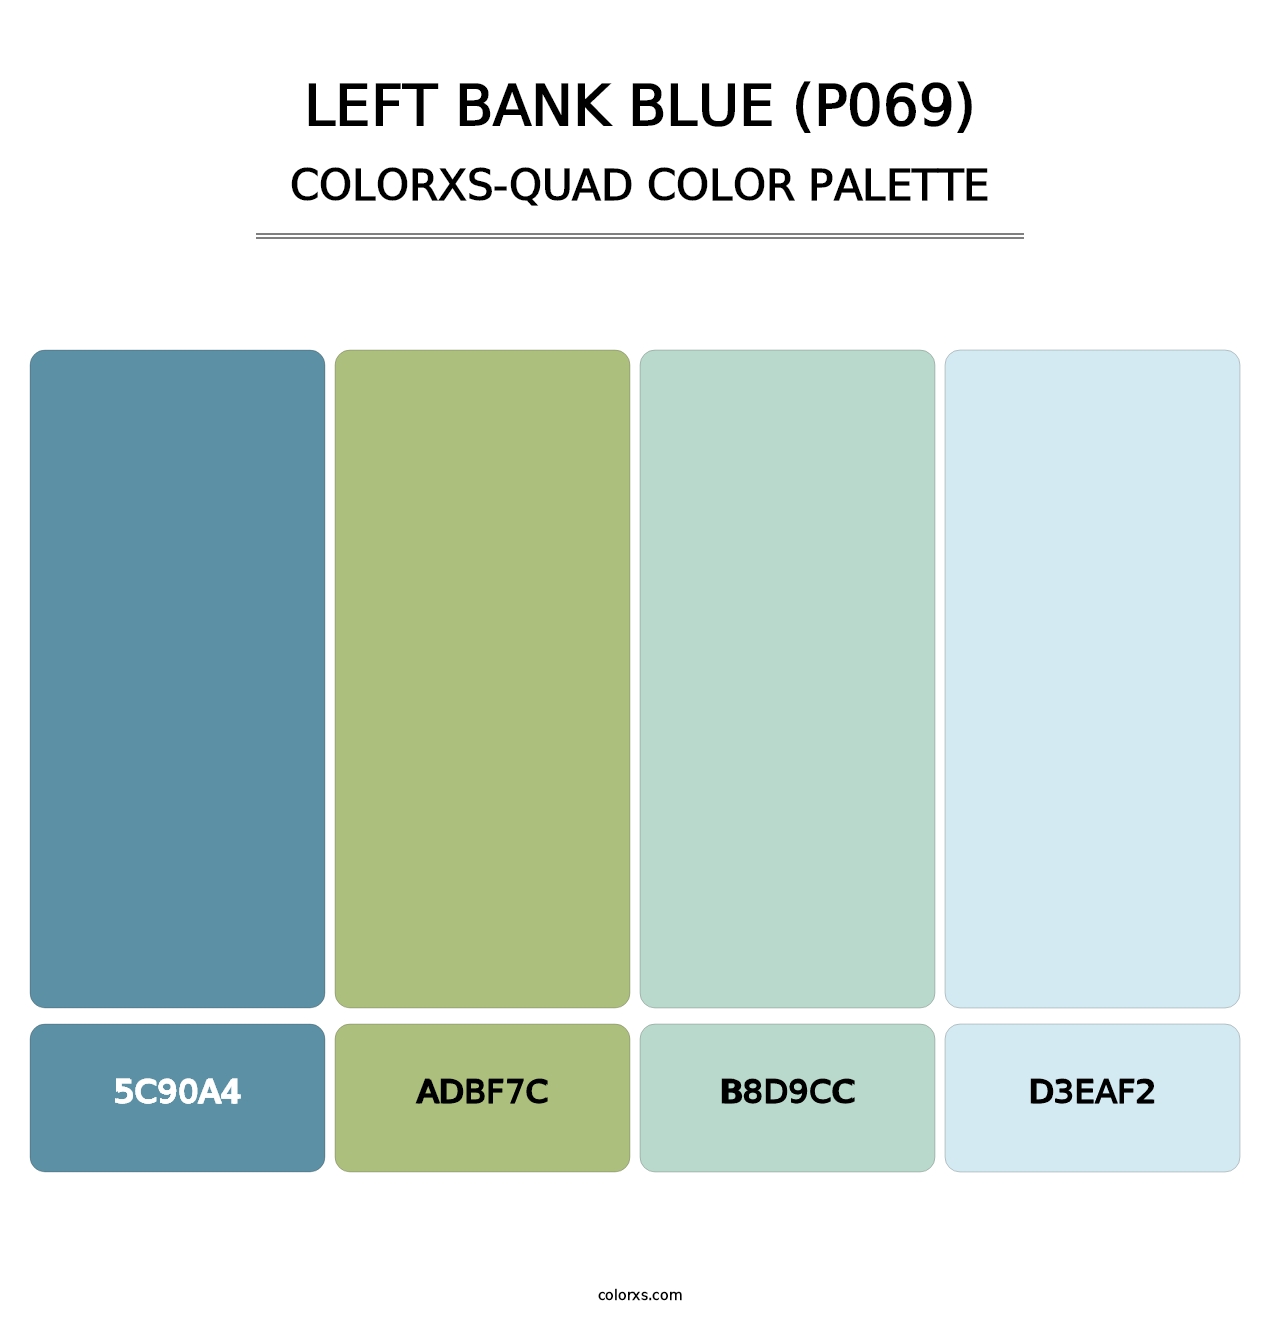 Left Bank Blue (P069) - Colorxs Quad Palette